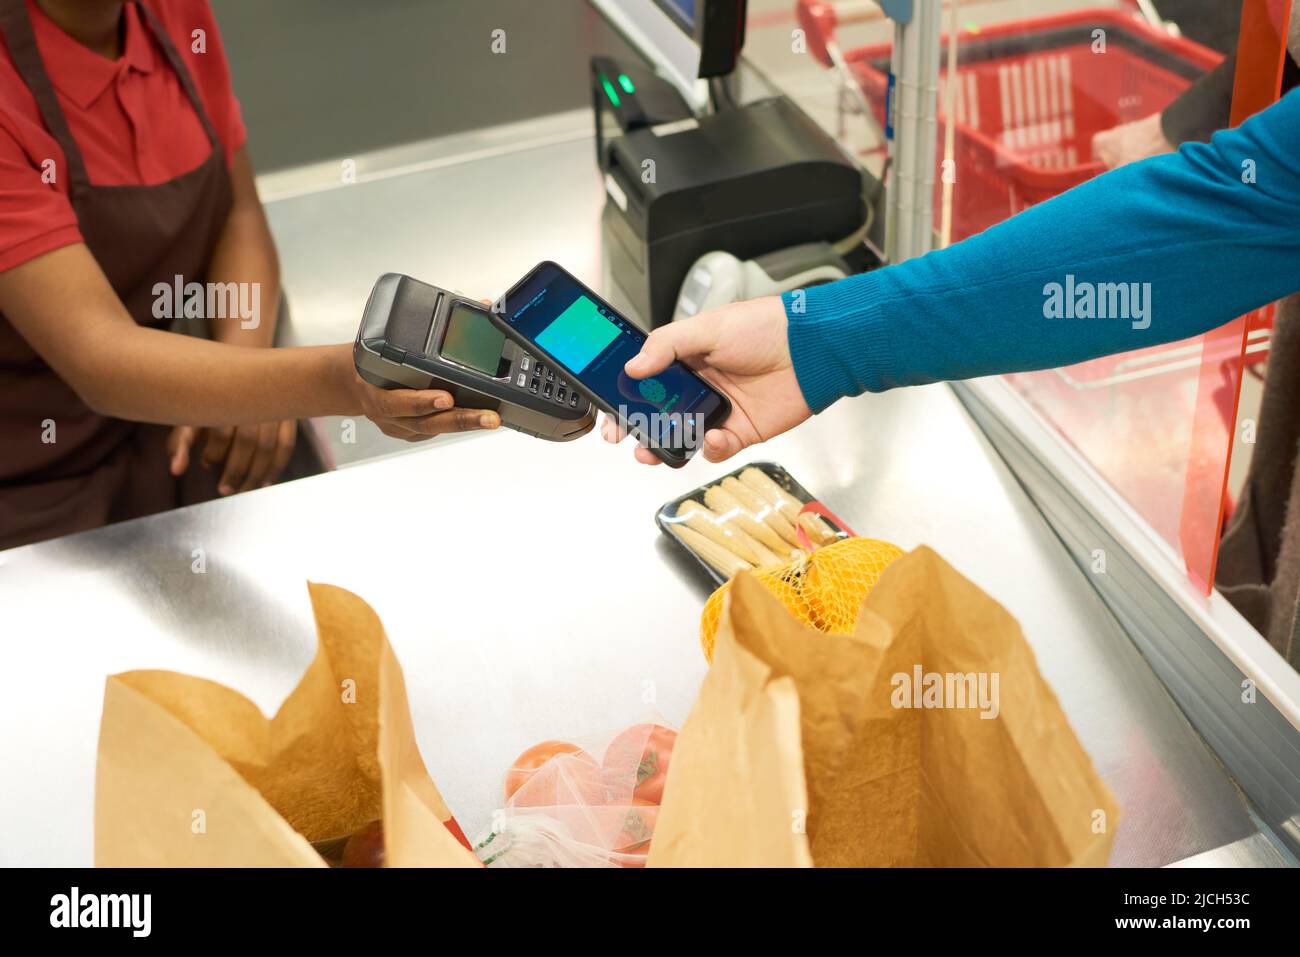 Hand des Käufers mit Smartphone und die des Verkäufers mit Zahlungsterminal über dem Ladentisch mit verpackten Lebensmitteln im Supermarkt Stockfoto